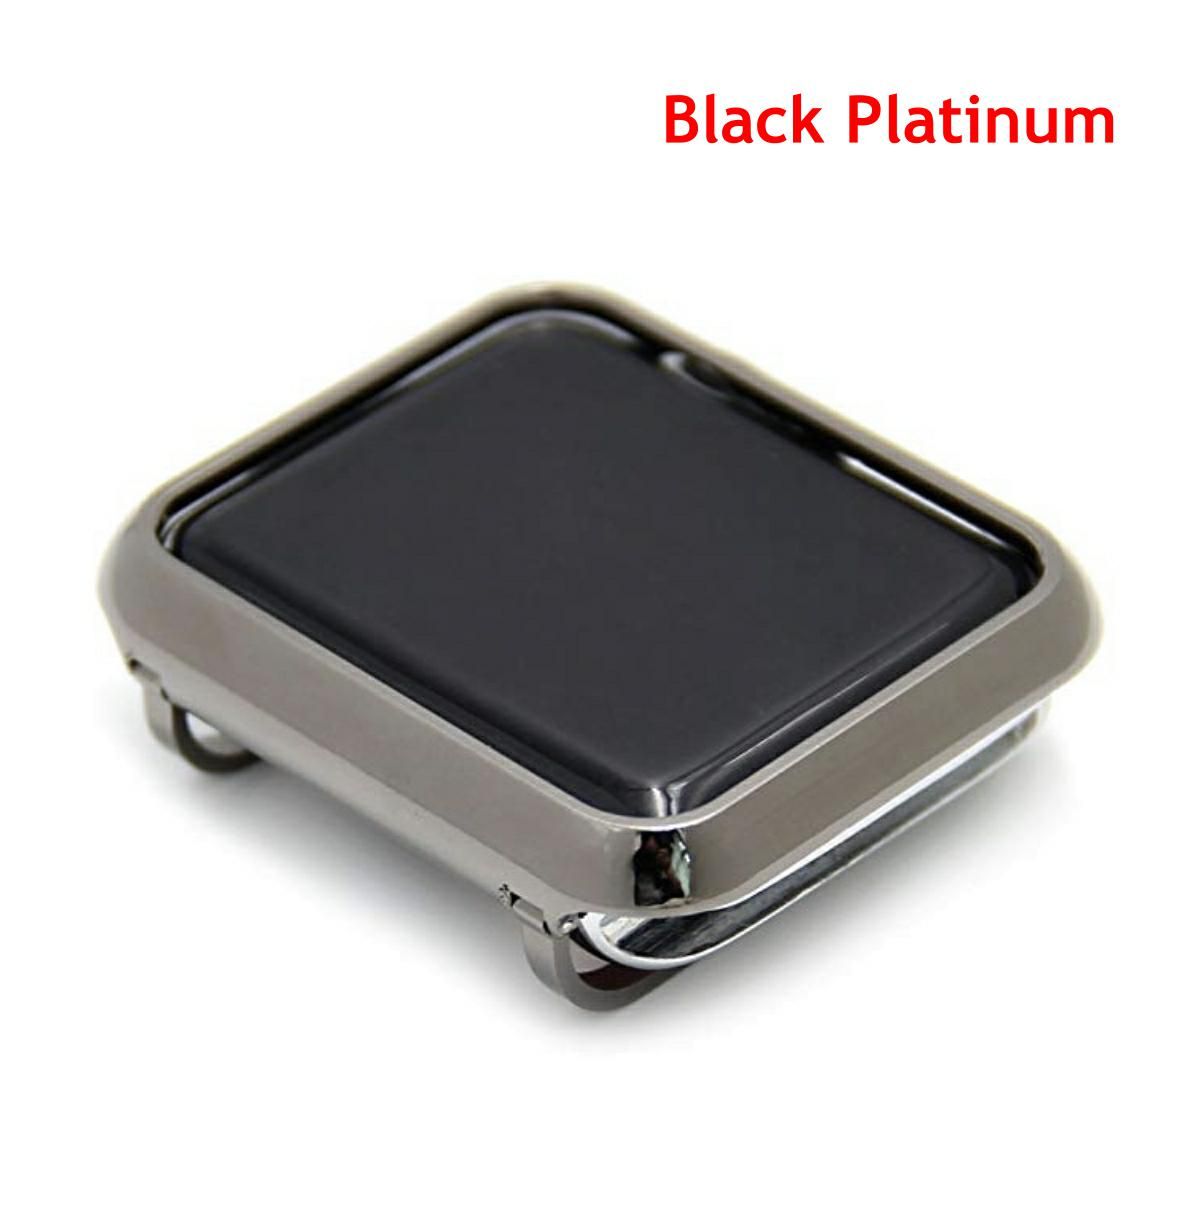 Black Platinum (38mm)